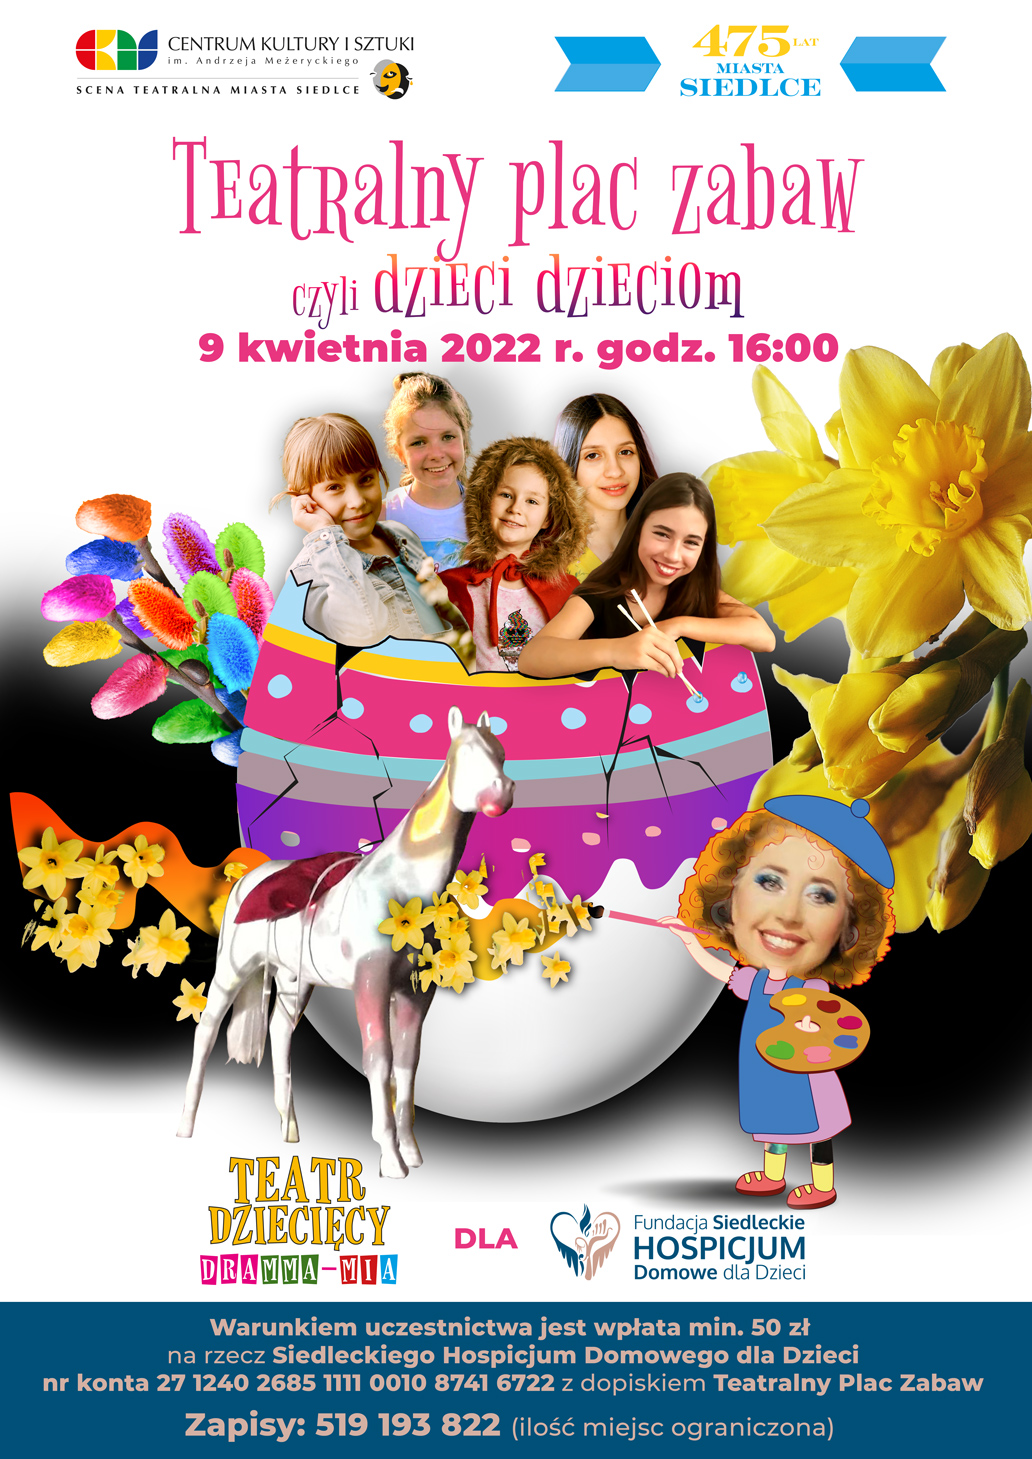 Weź udział w Teatralnym Placu Zabaw i wspomóż Siedleckie Hospicjum Domowe dla Dzieci 